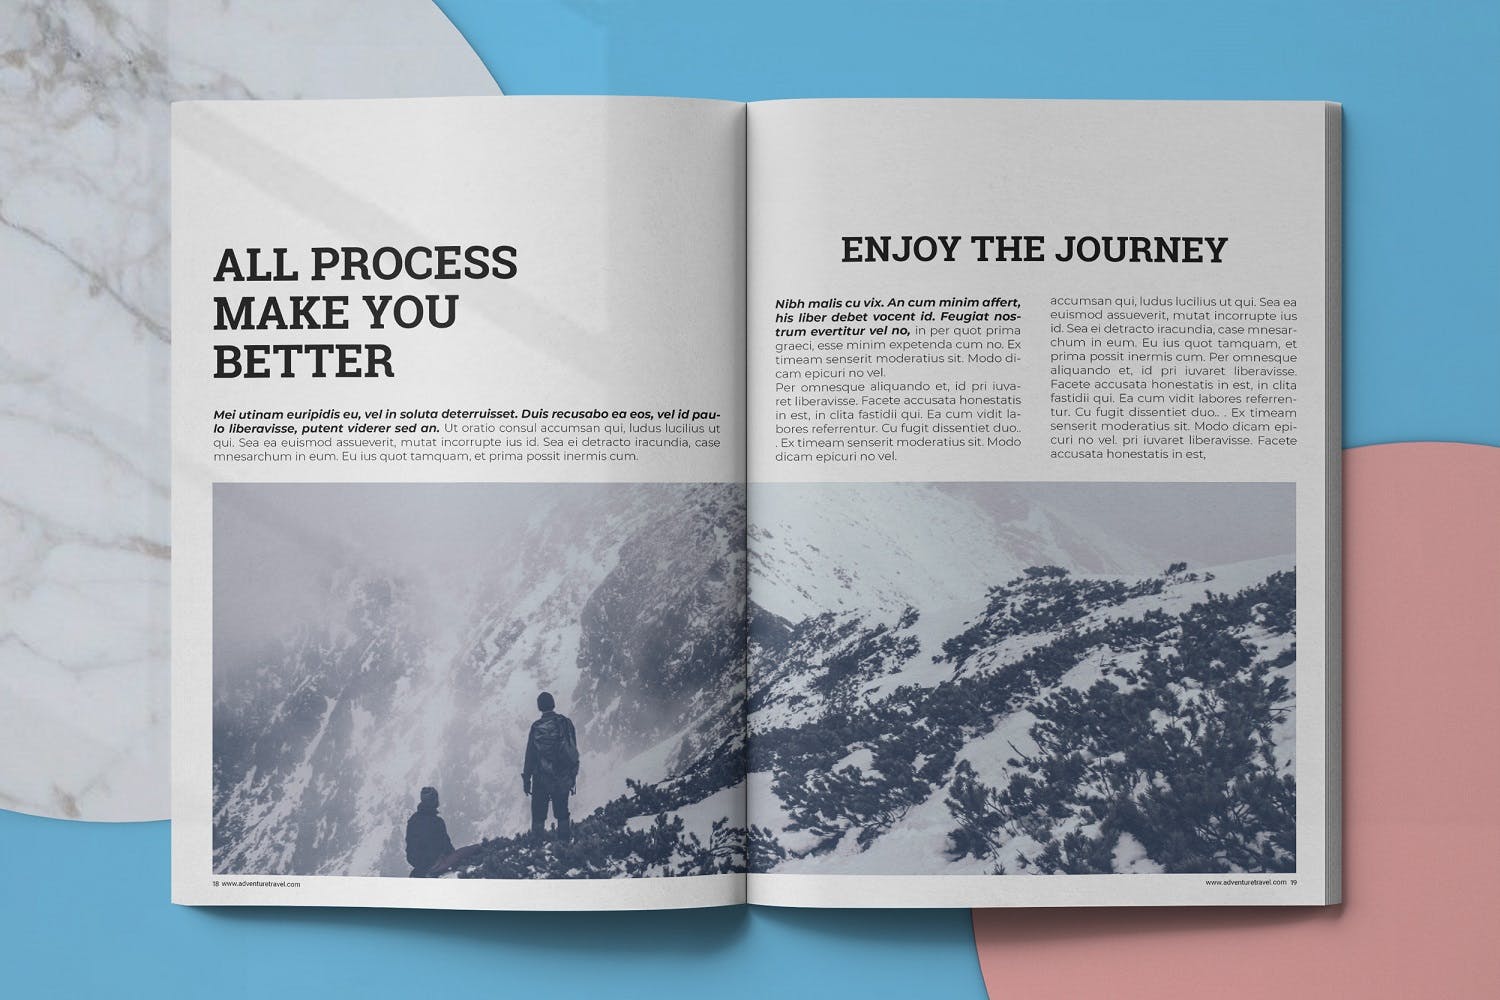 冒险旅行主题16设计网精选杂志排版设计模板 Adventure Travel Magazine Template插图(9)